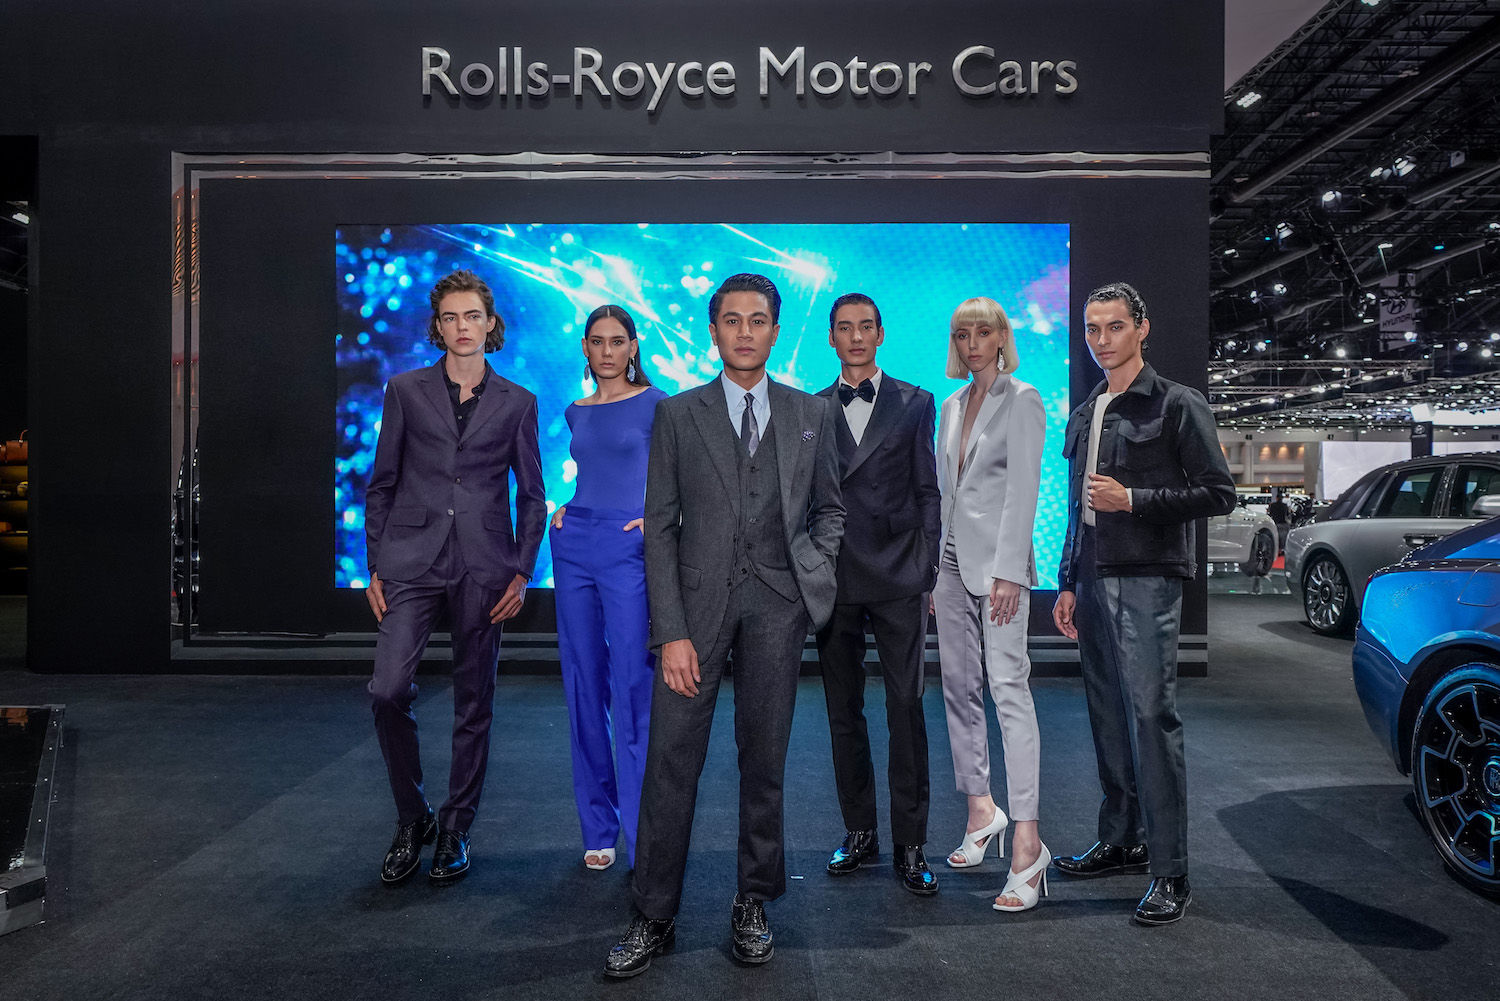 Von Sugunnasil Reinterprets Iconic Rolls-Royce Cars as Bespoke Outfits